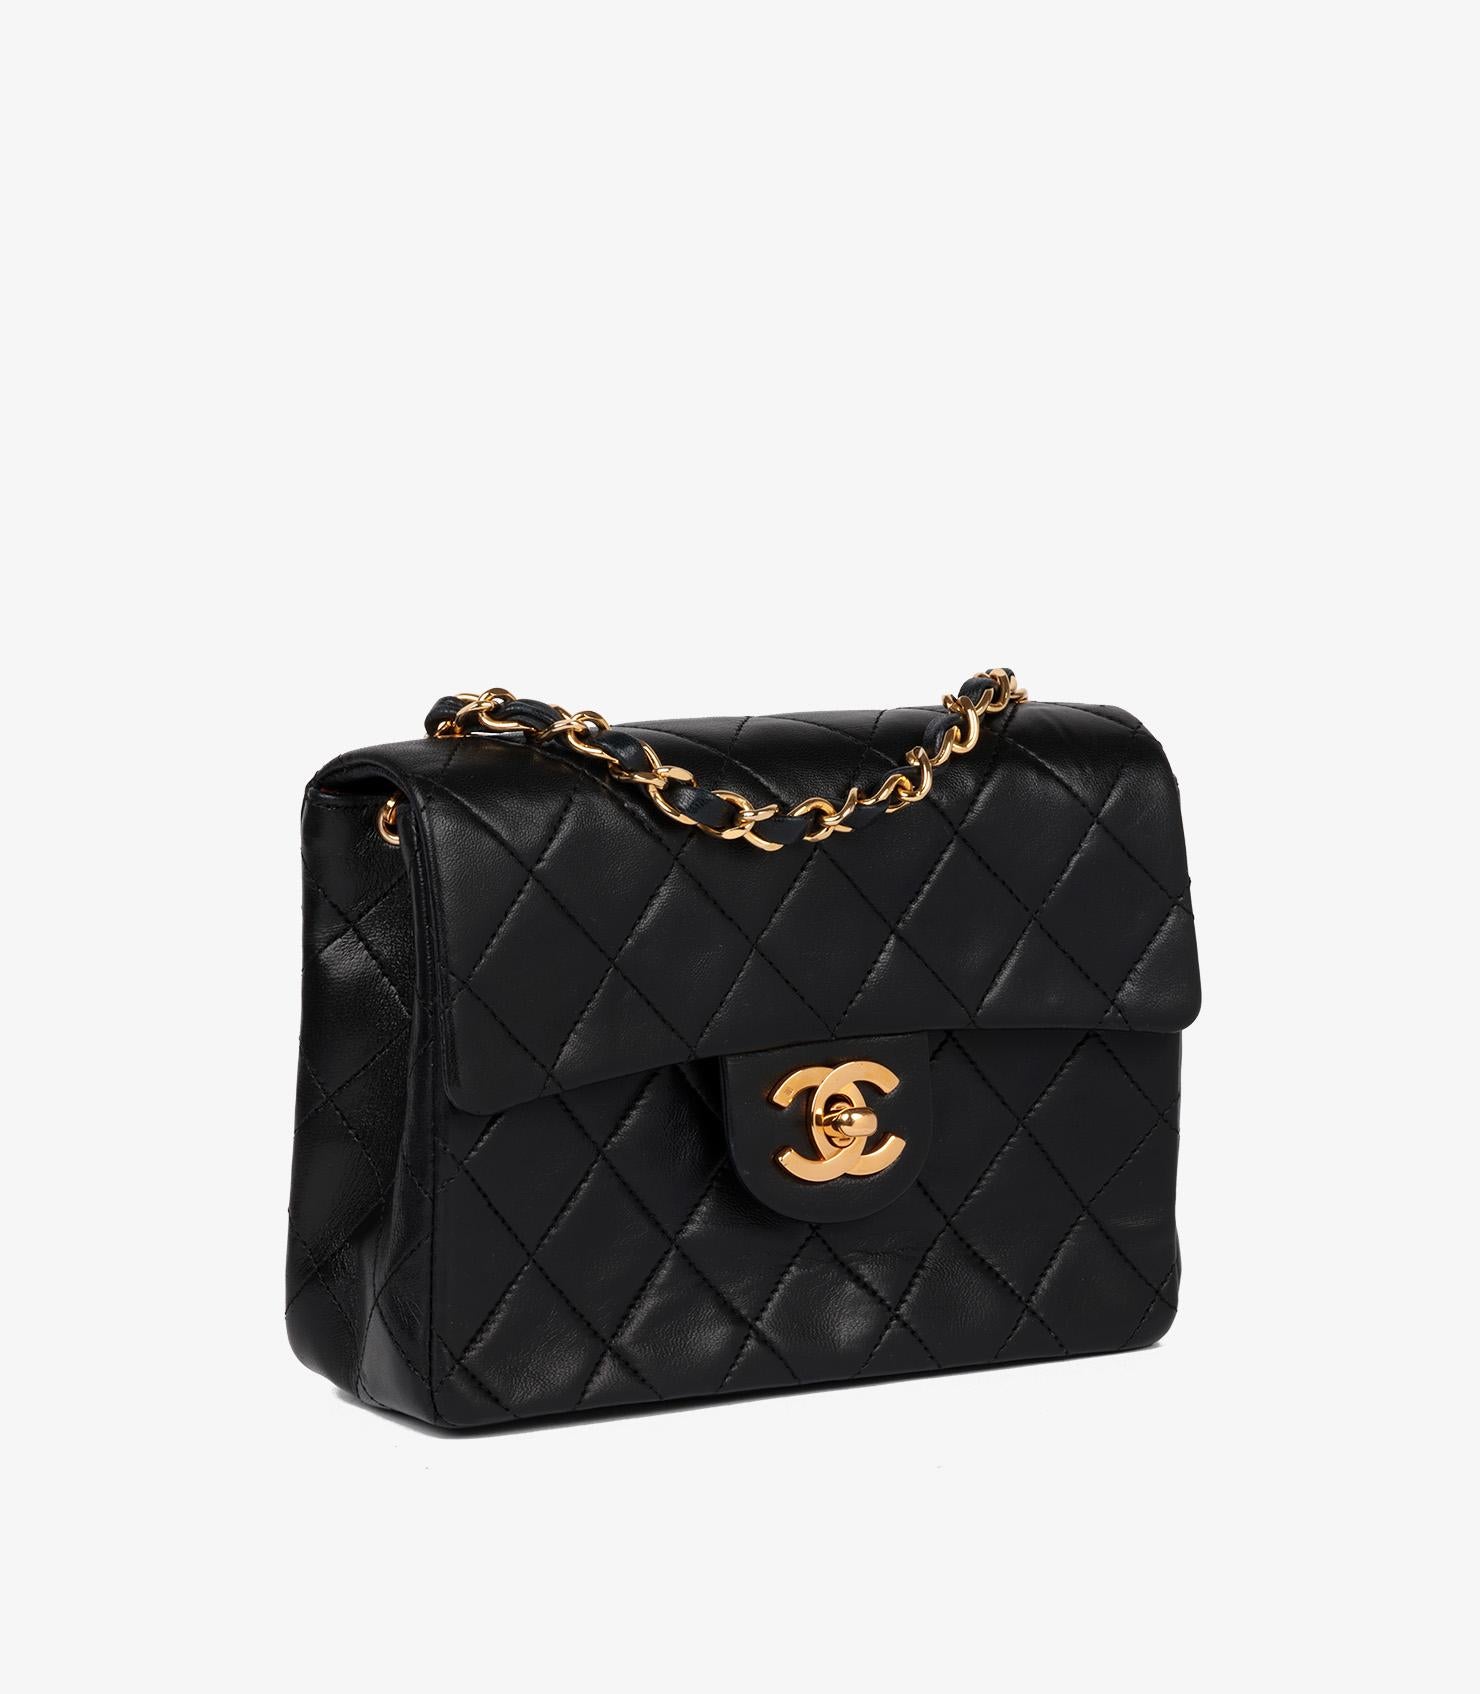 Chanel Schwarzes gestepptes Lammfell Vintage Square Classic Mini Flap Bag

Marke- Chanel
Modell- Quadratische Mini-Klappentasche
Produkttyp- Umhängetasche, Schulter
Seriennummer - 98*****
Alter- Circa 1988
Begleitet von - Chanel Staubbeutel,